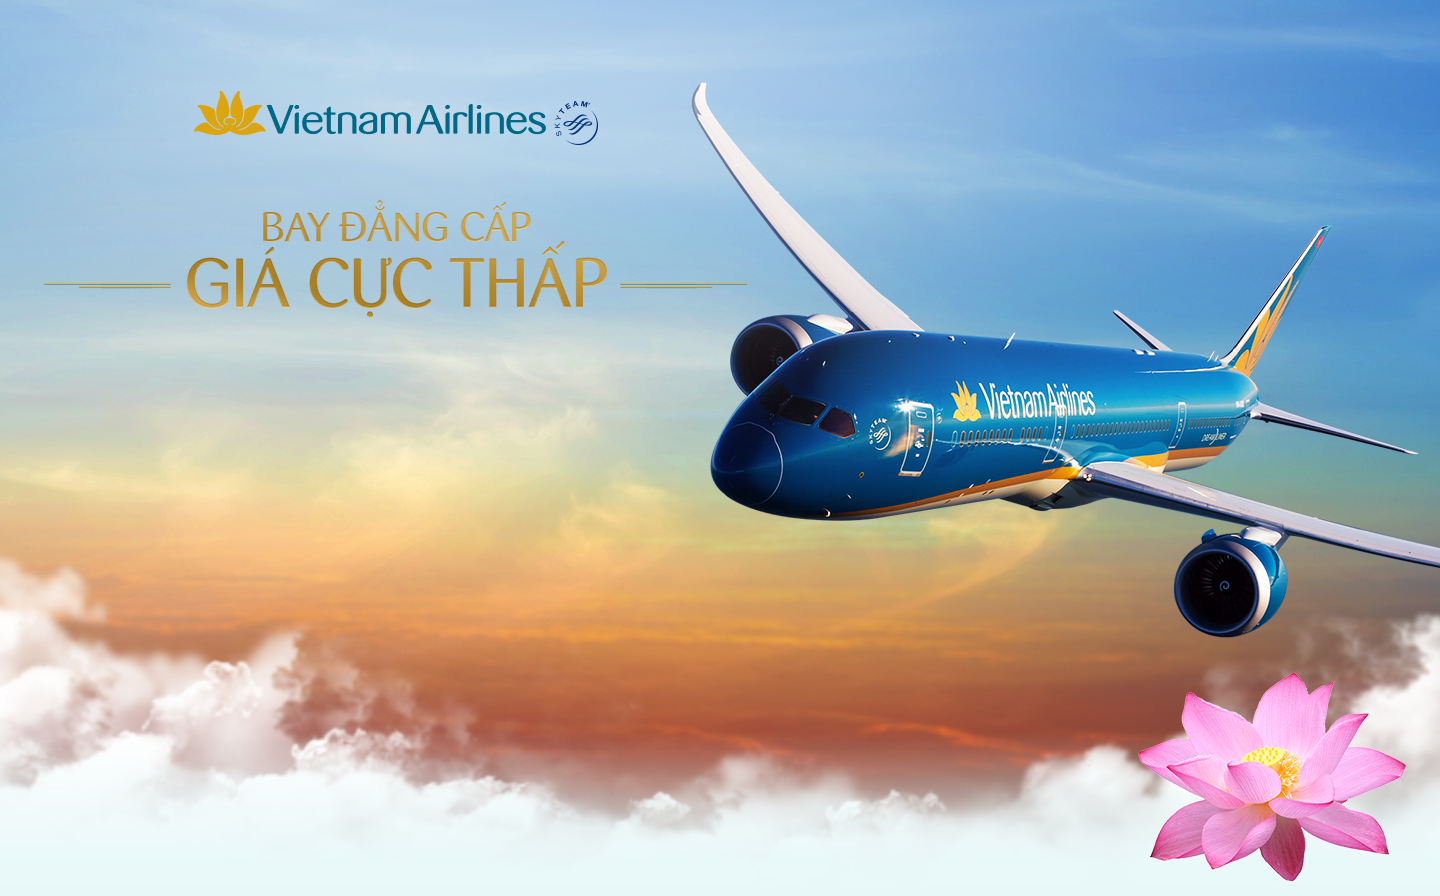 Cập nhật bảng giá vé Vietnam Airlines dịp lễ 30/4 – 1/5